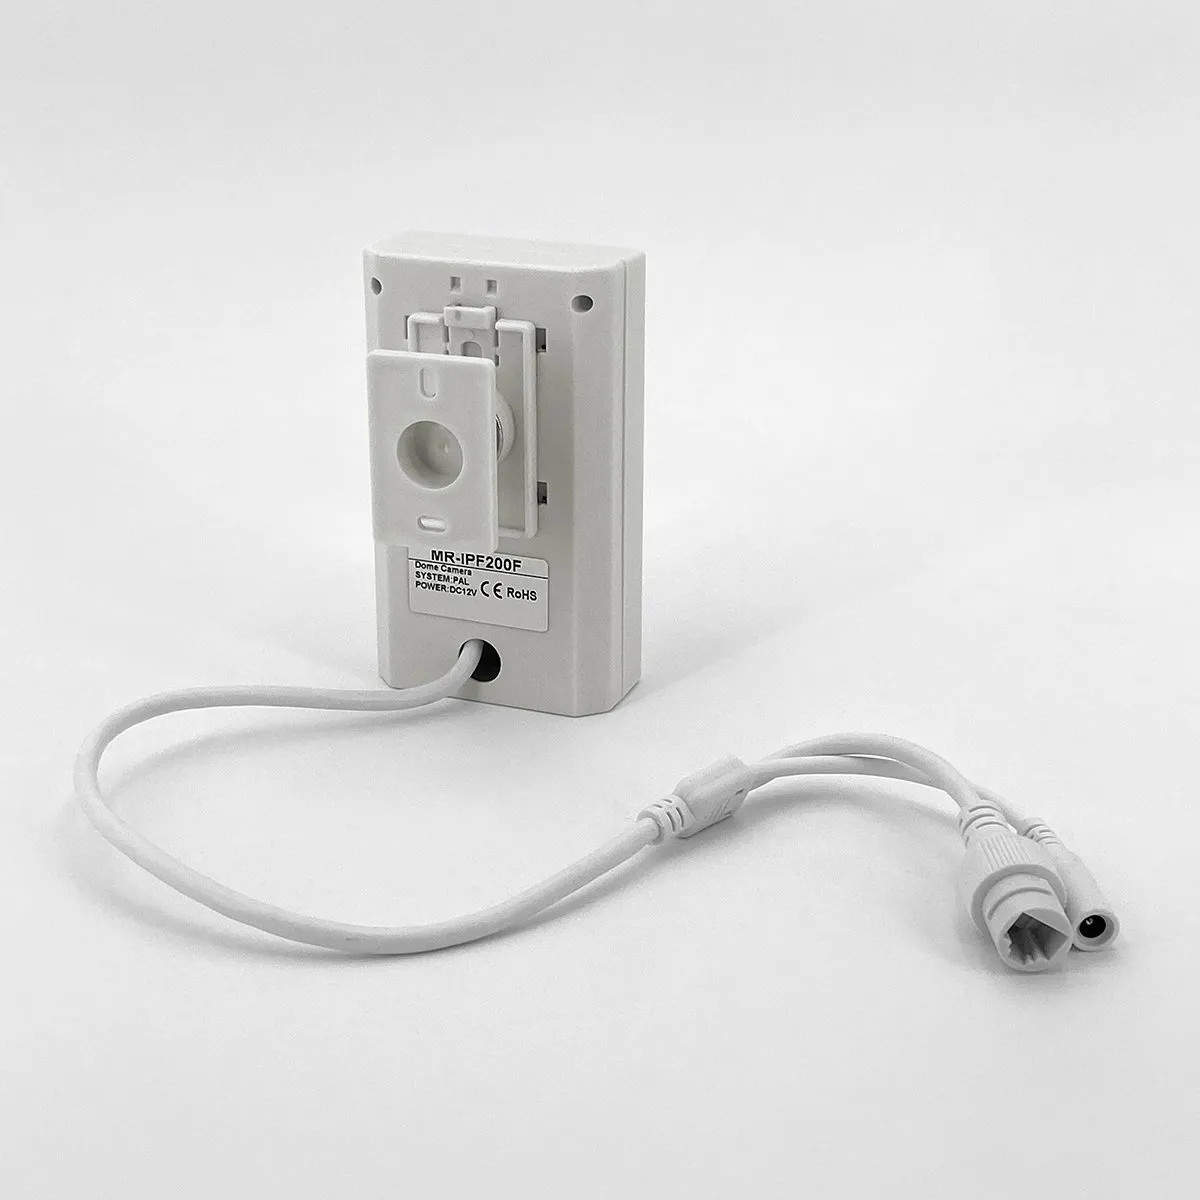 Telecamera nascosta IP 2Mpx 48 LED NERI (non visibile ad occhio umano), Focale fissa 3,7mm